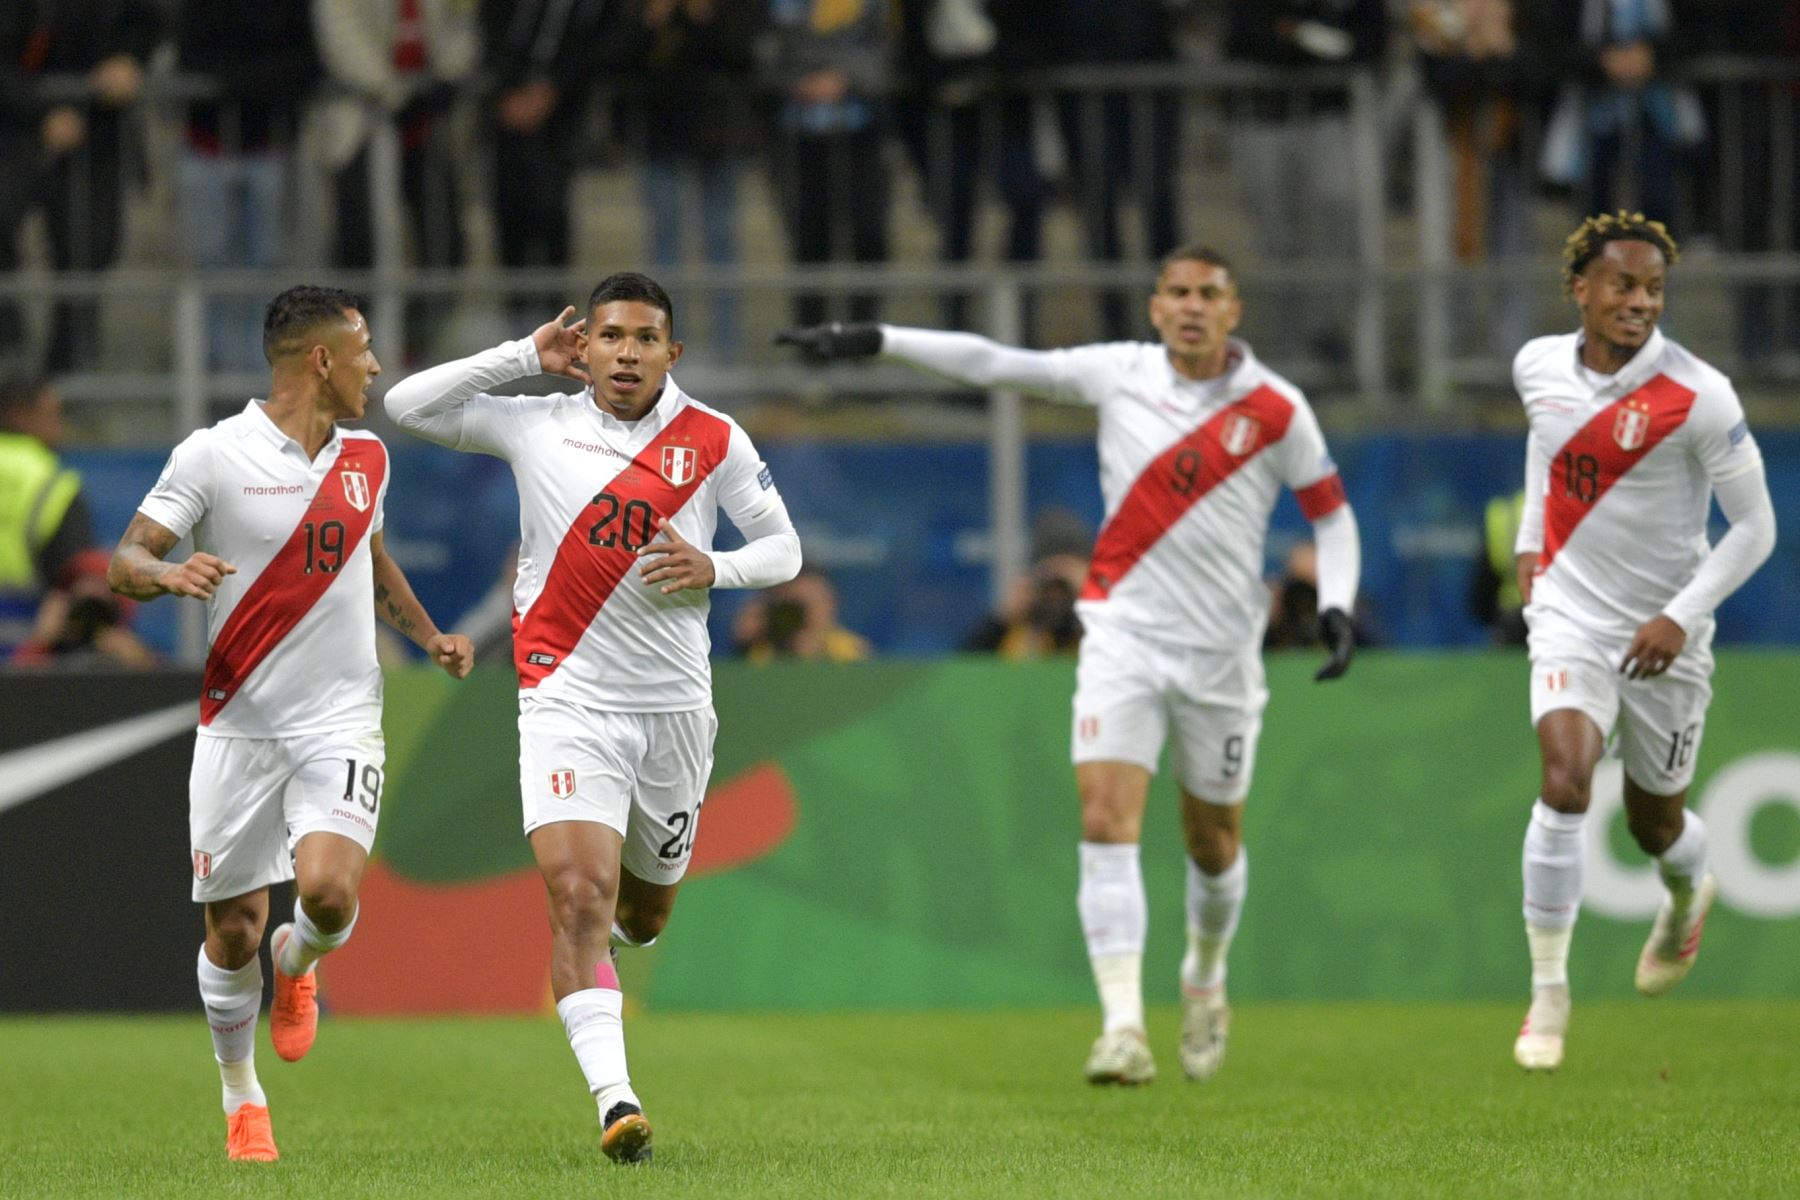 Edison Flores (2da L) de Perú celebra con sus compañeros de equipo luego de anotar contra Chile durante su partido de semifinal del torneo de fútbol de la Copa América.
Foto: AFP